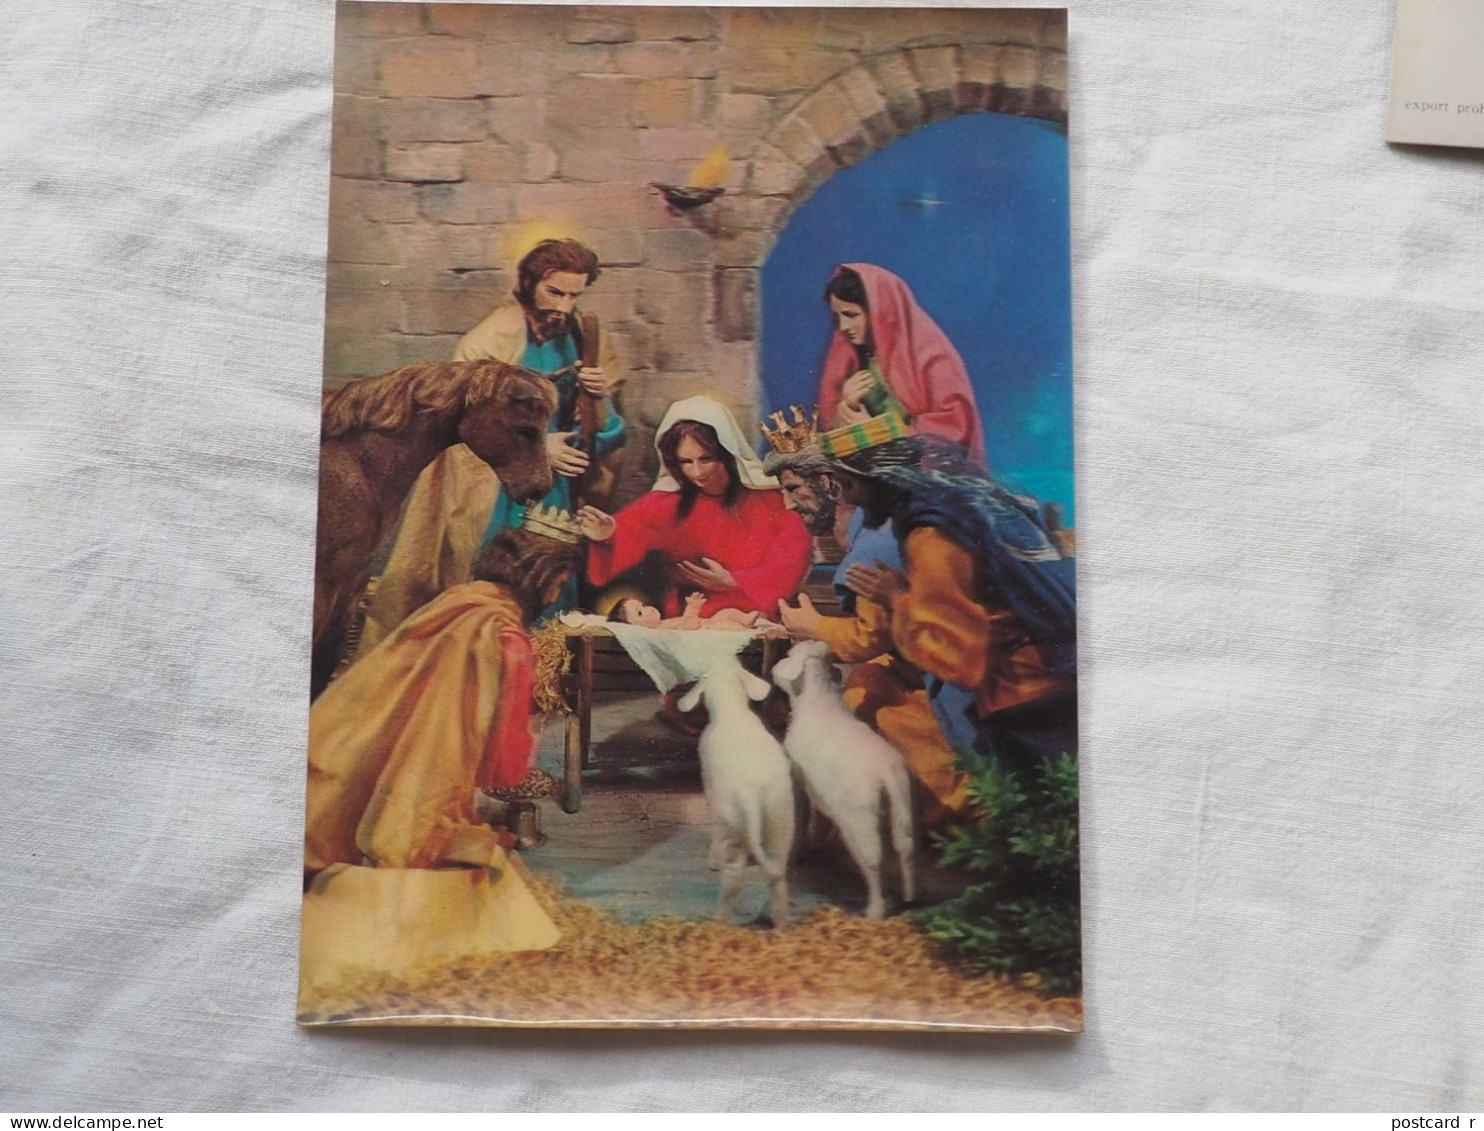 3d 3 D Lenticular Postcard Stereo Religion Nativity    Japan  1980 A 227 - Stereoscopische Kaarten